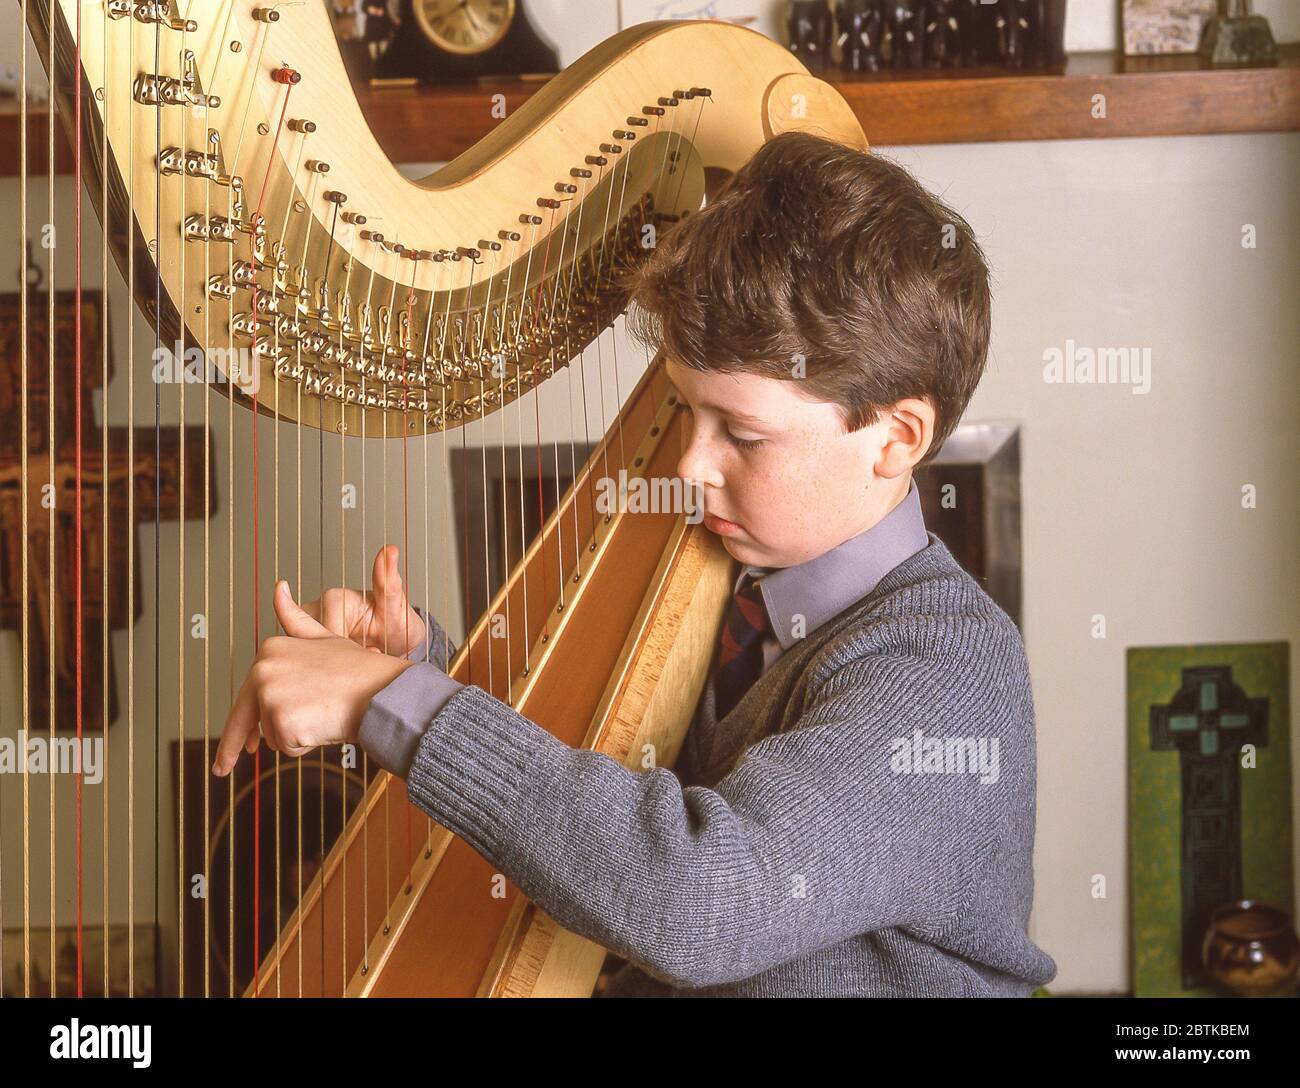 Un écolier jouant de l'instrument de musique de harpe à l'école, Surrey, Angleterre, Royaume-Uni Banque D'Images